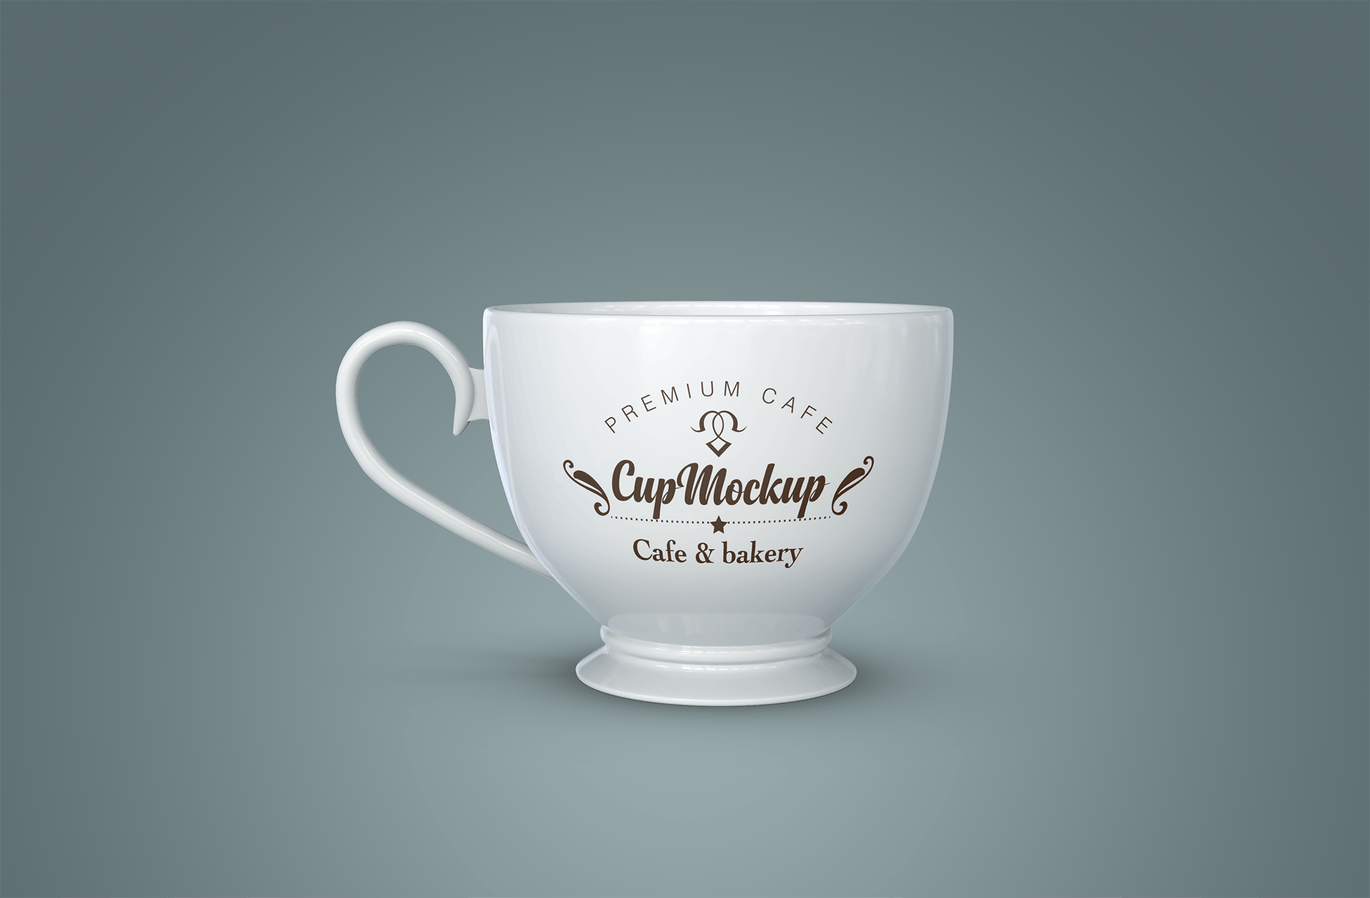 陶瓷茶杯咖啡杯外观设计样机模板v2 Cup Mockup 2.0插图5